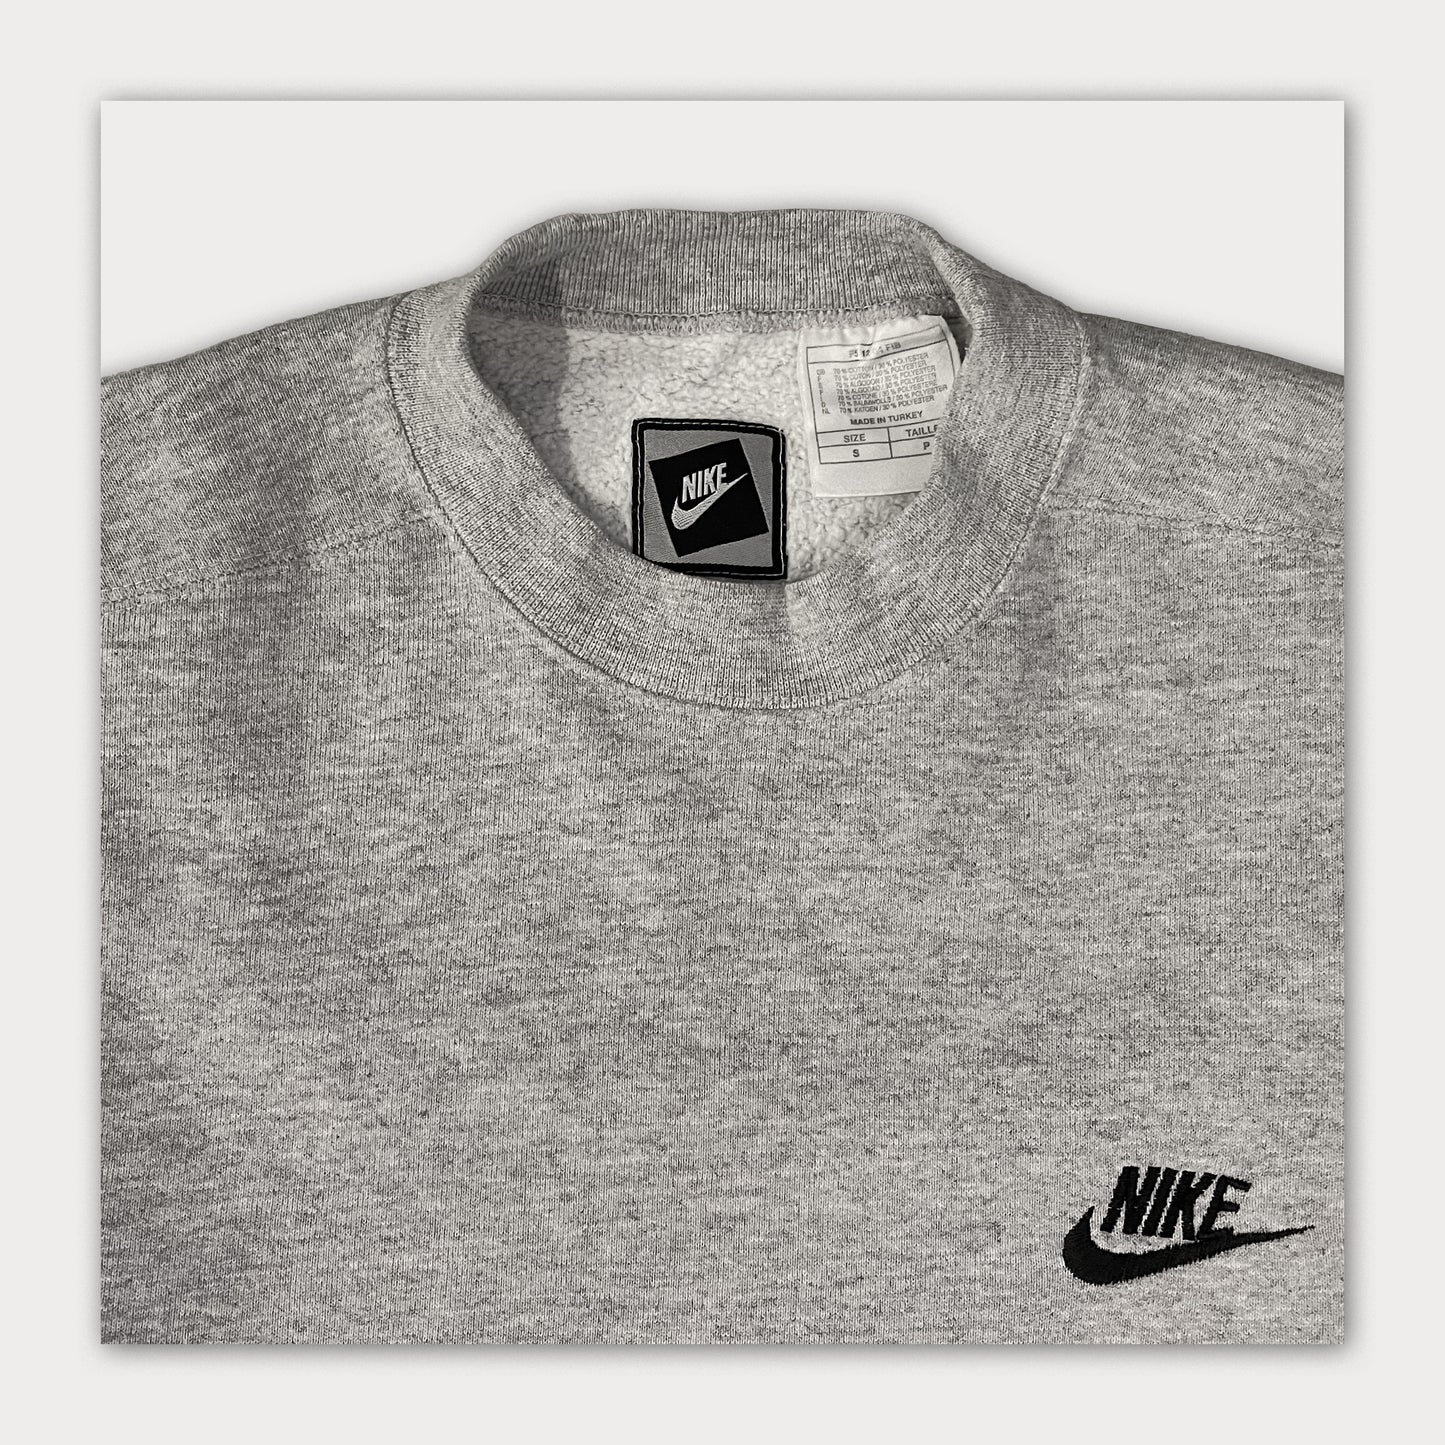 90s Nike sweatshirt